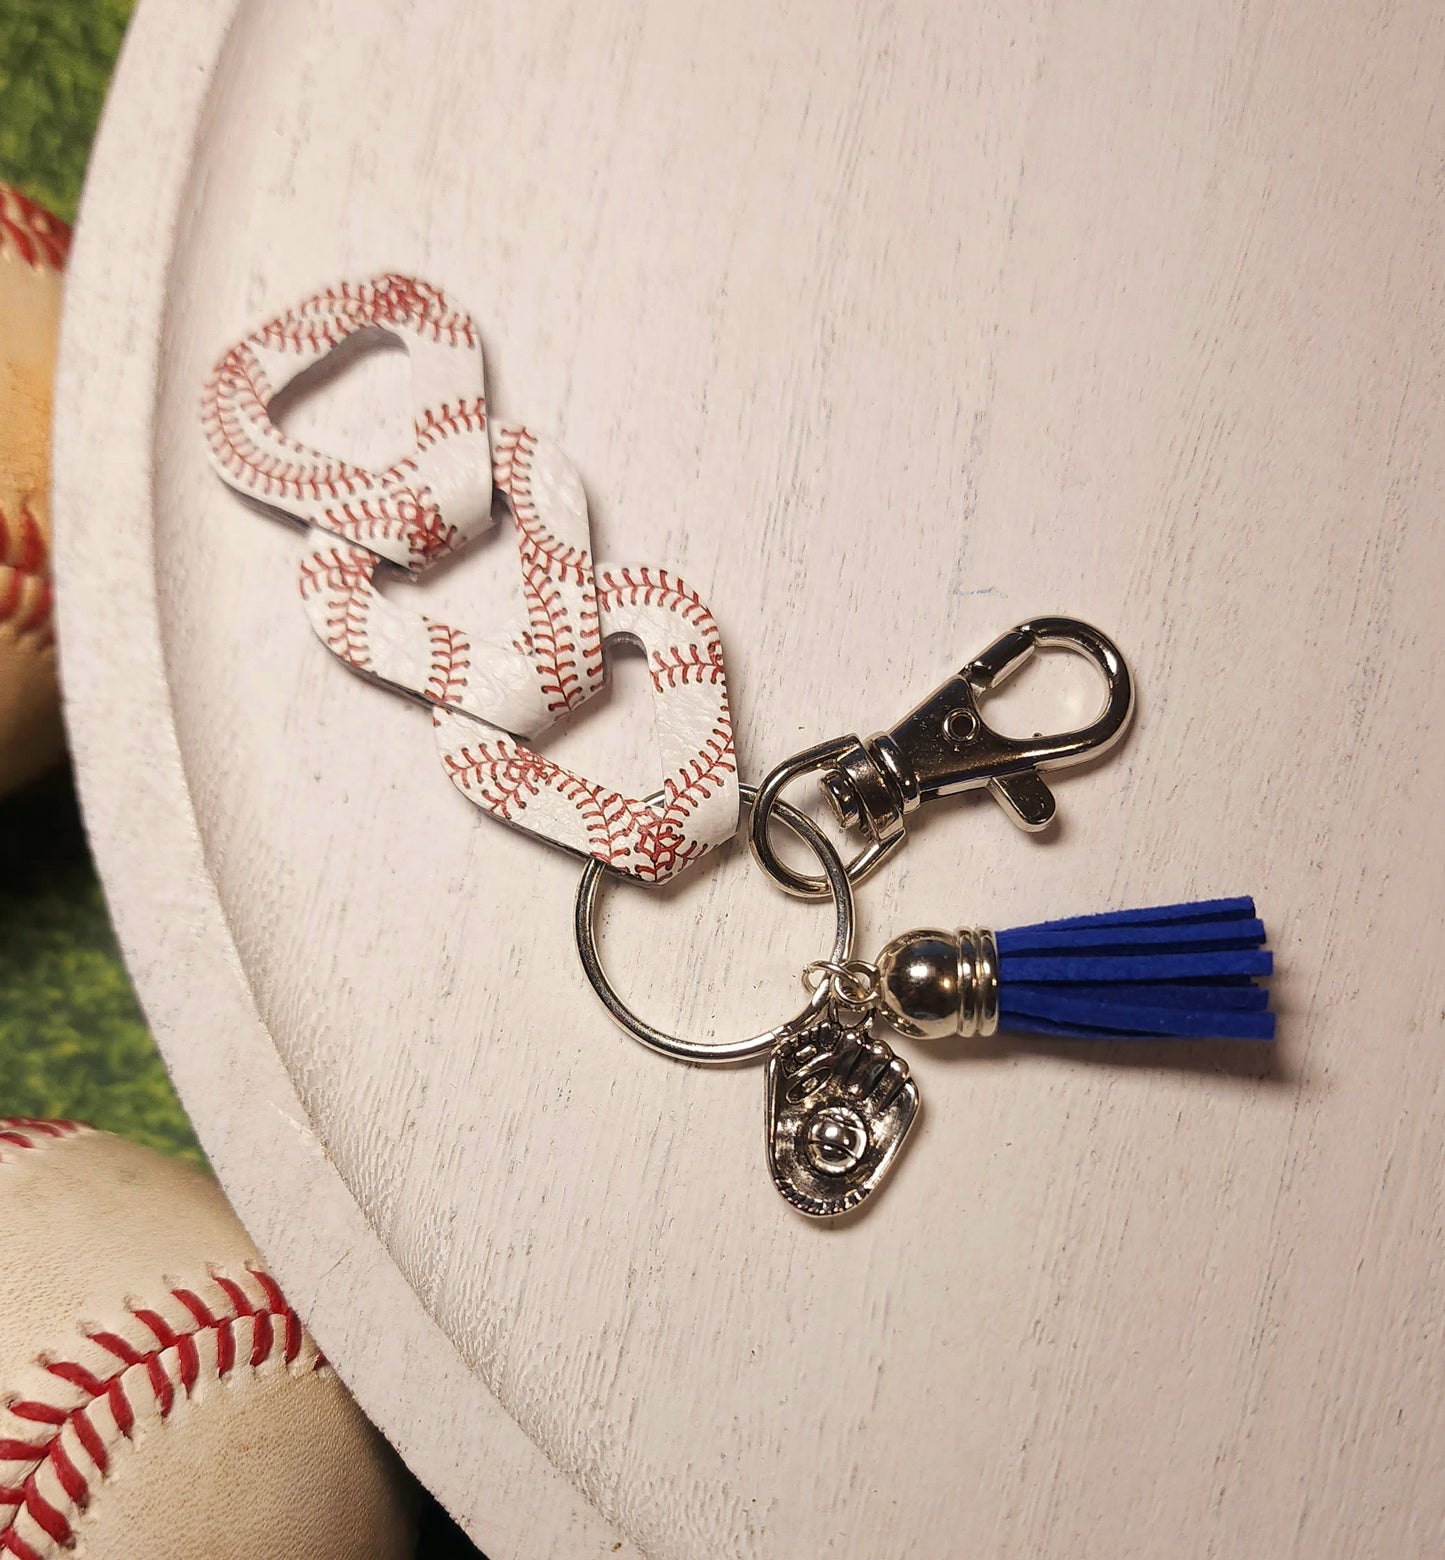 Baseball Stitching Interlocking Keychain